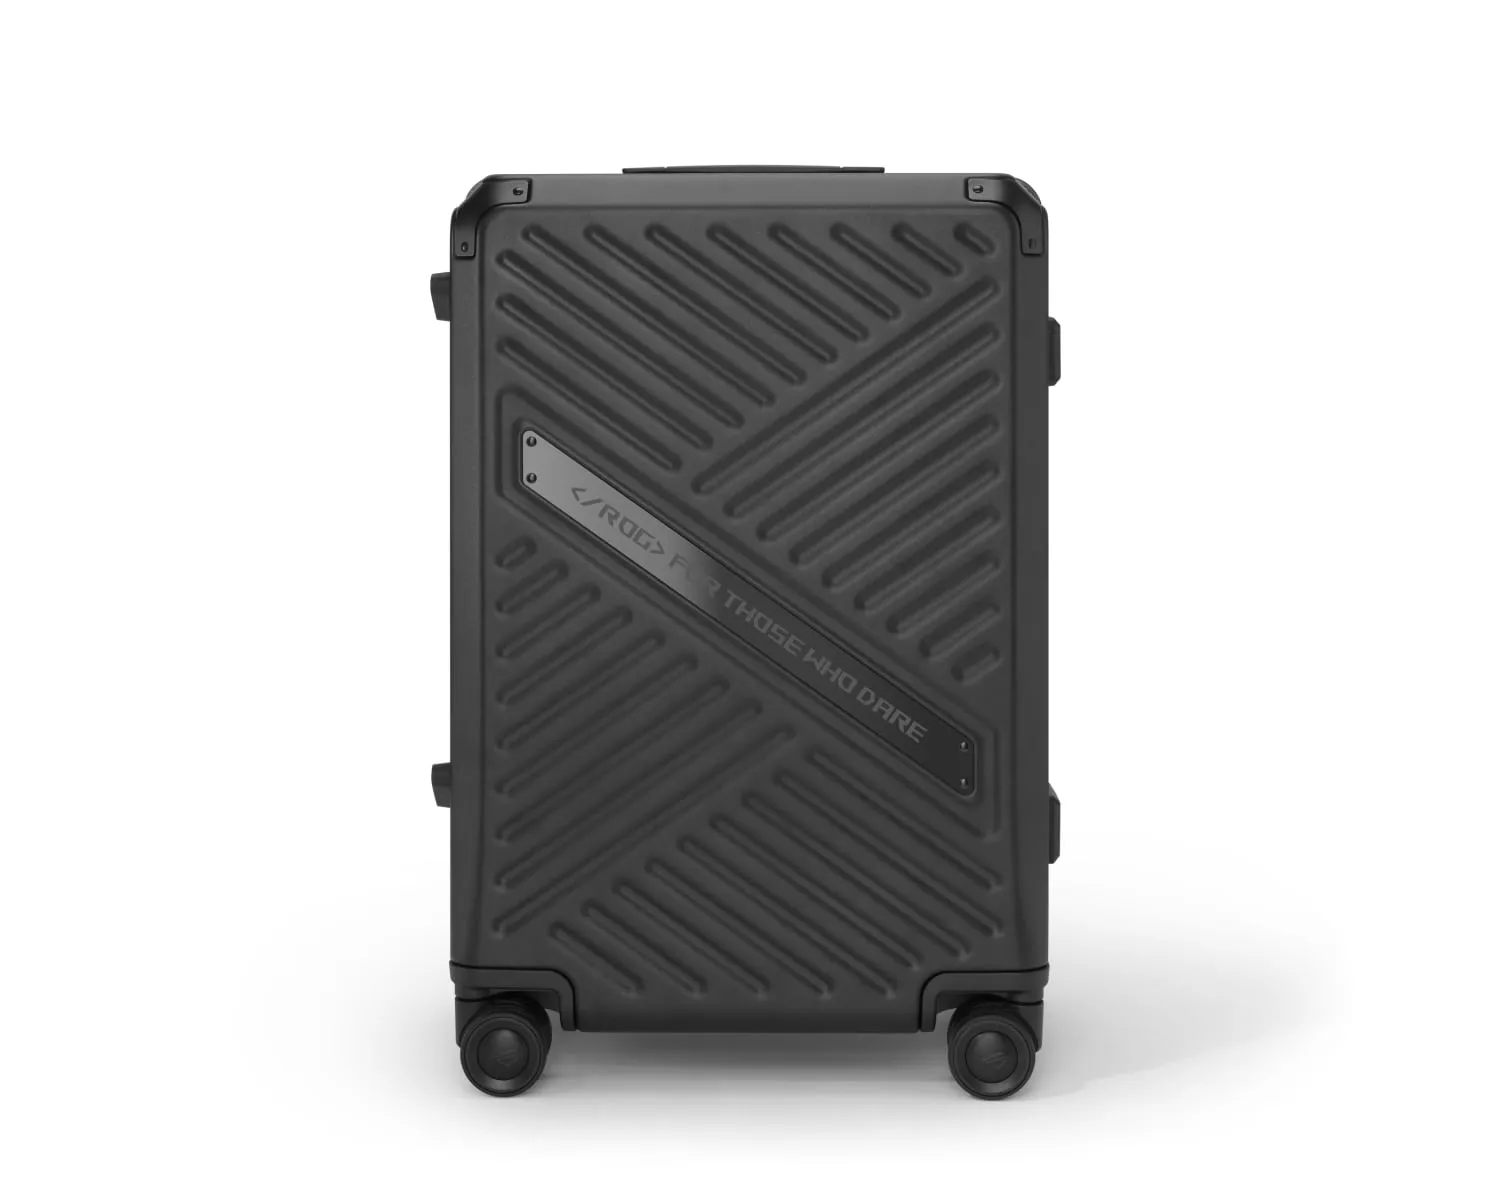 Snímek zavazadla ROG SLASH Hard Case na bílém pozadí